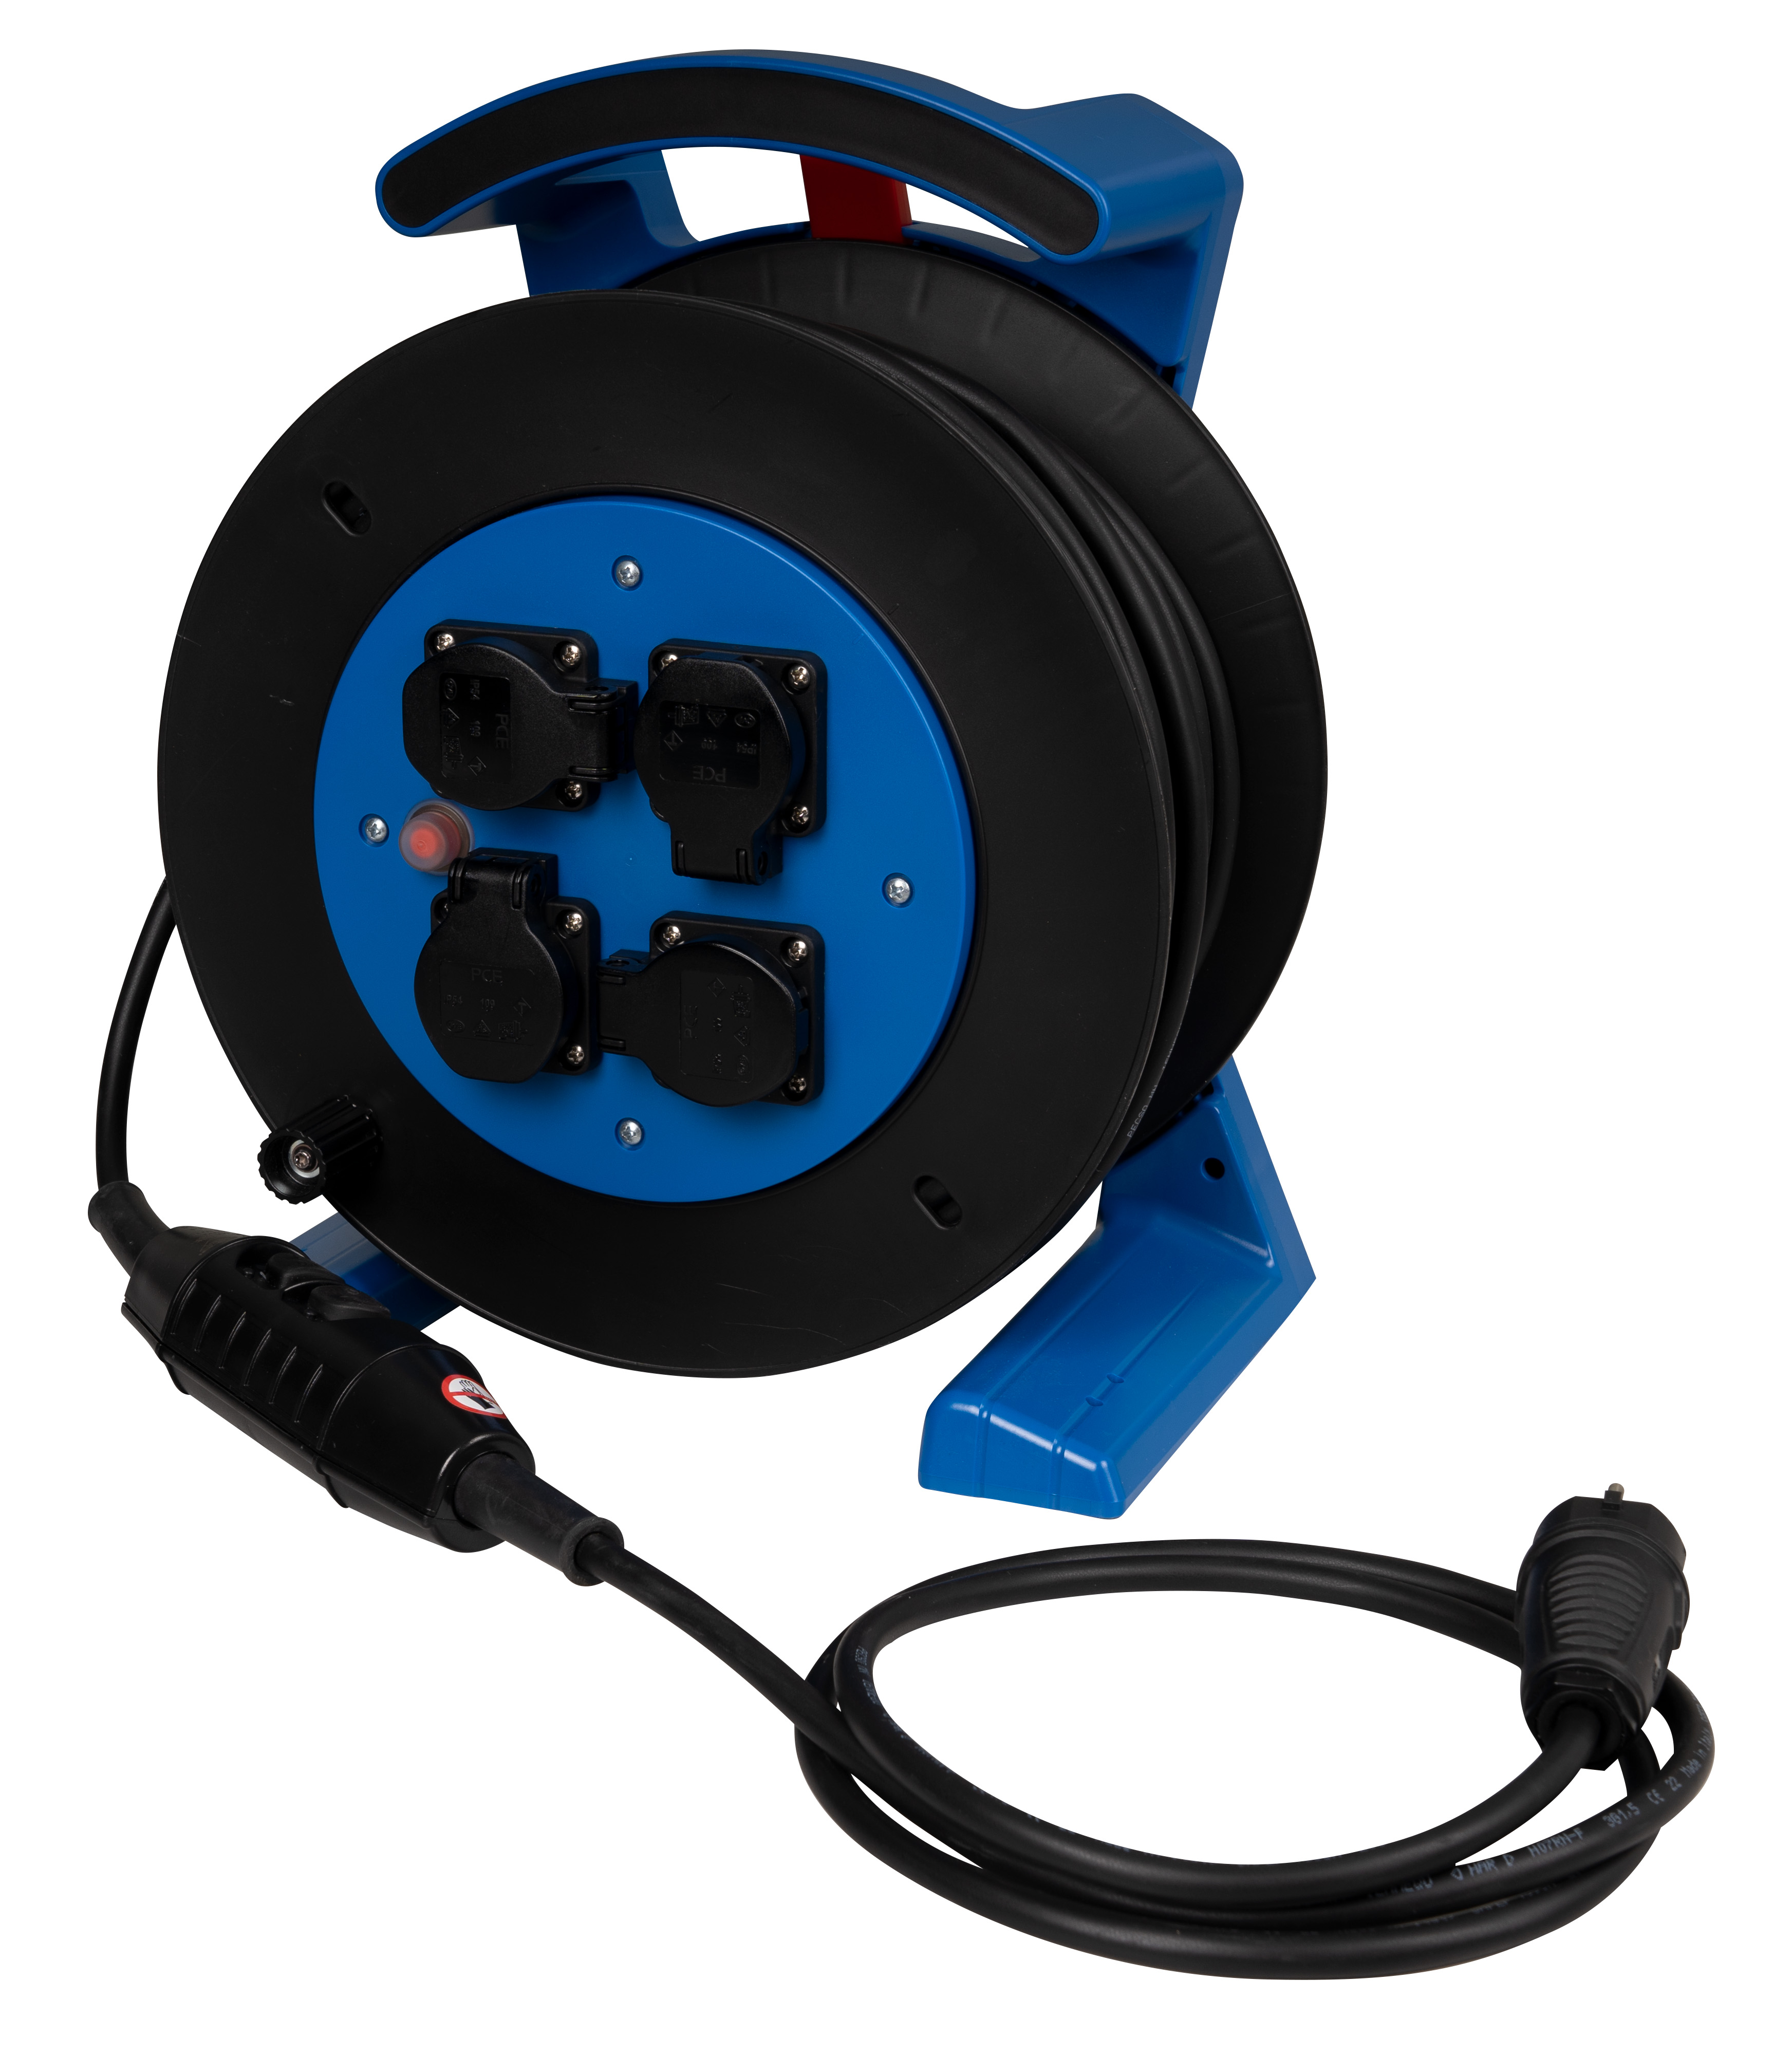 Kabeltrommel blau-schwarz, 4 x Schutzkontakt-Steckdose, H07RN-F 3 G 1,5 mm², 40 m, mit PRCD-S JUMBO L 2.0